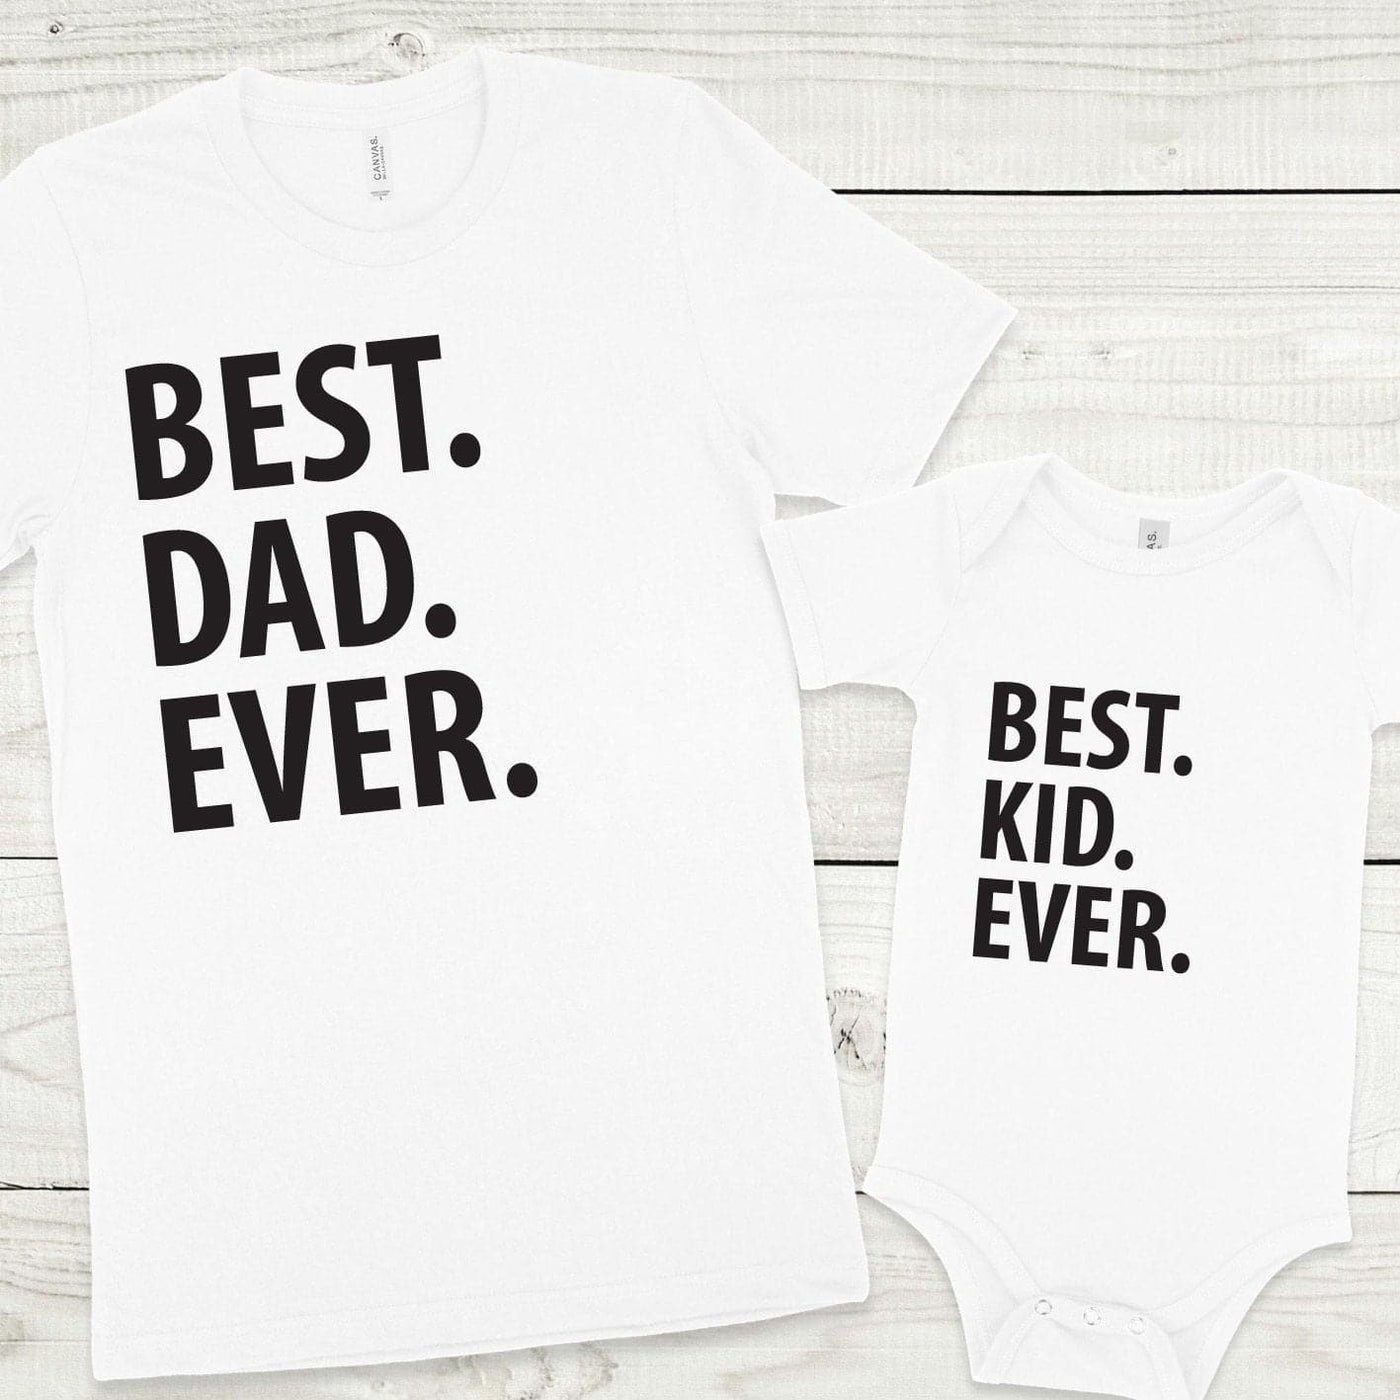 Matchy majici BEST DAD / KID EVER - BIBA.si spletna trgovina